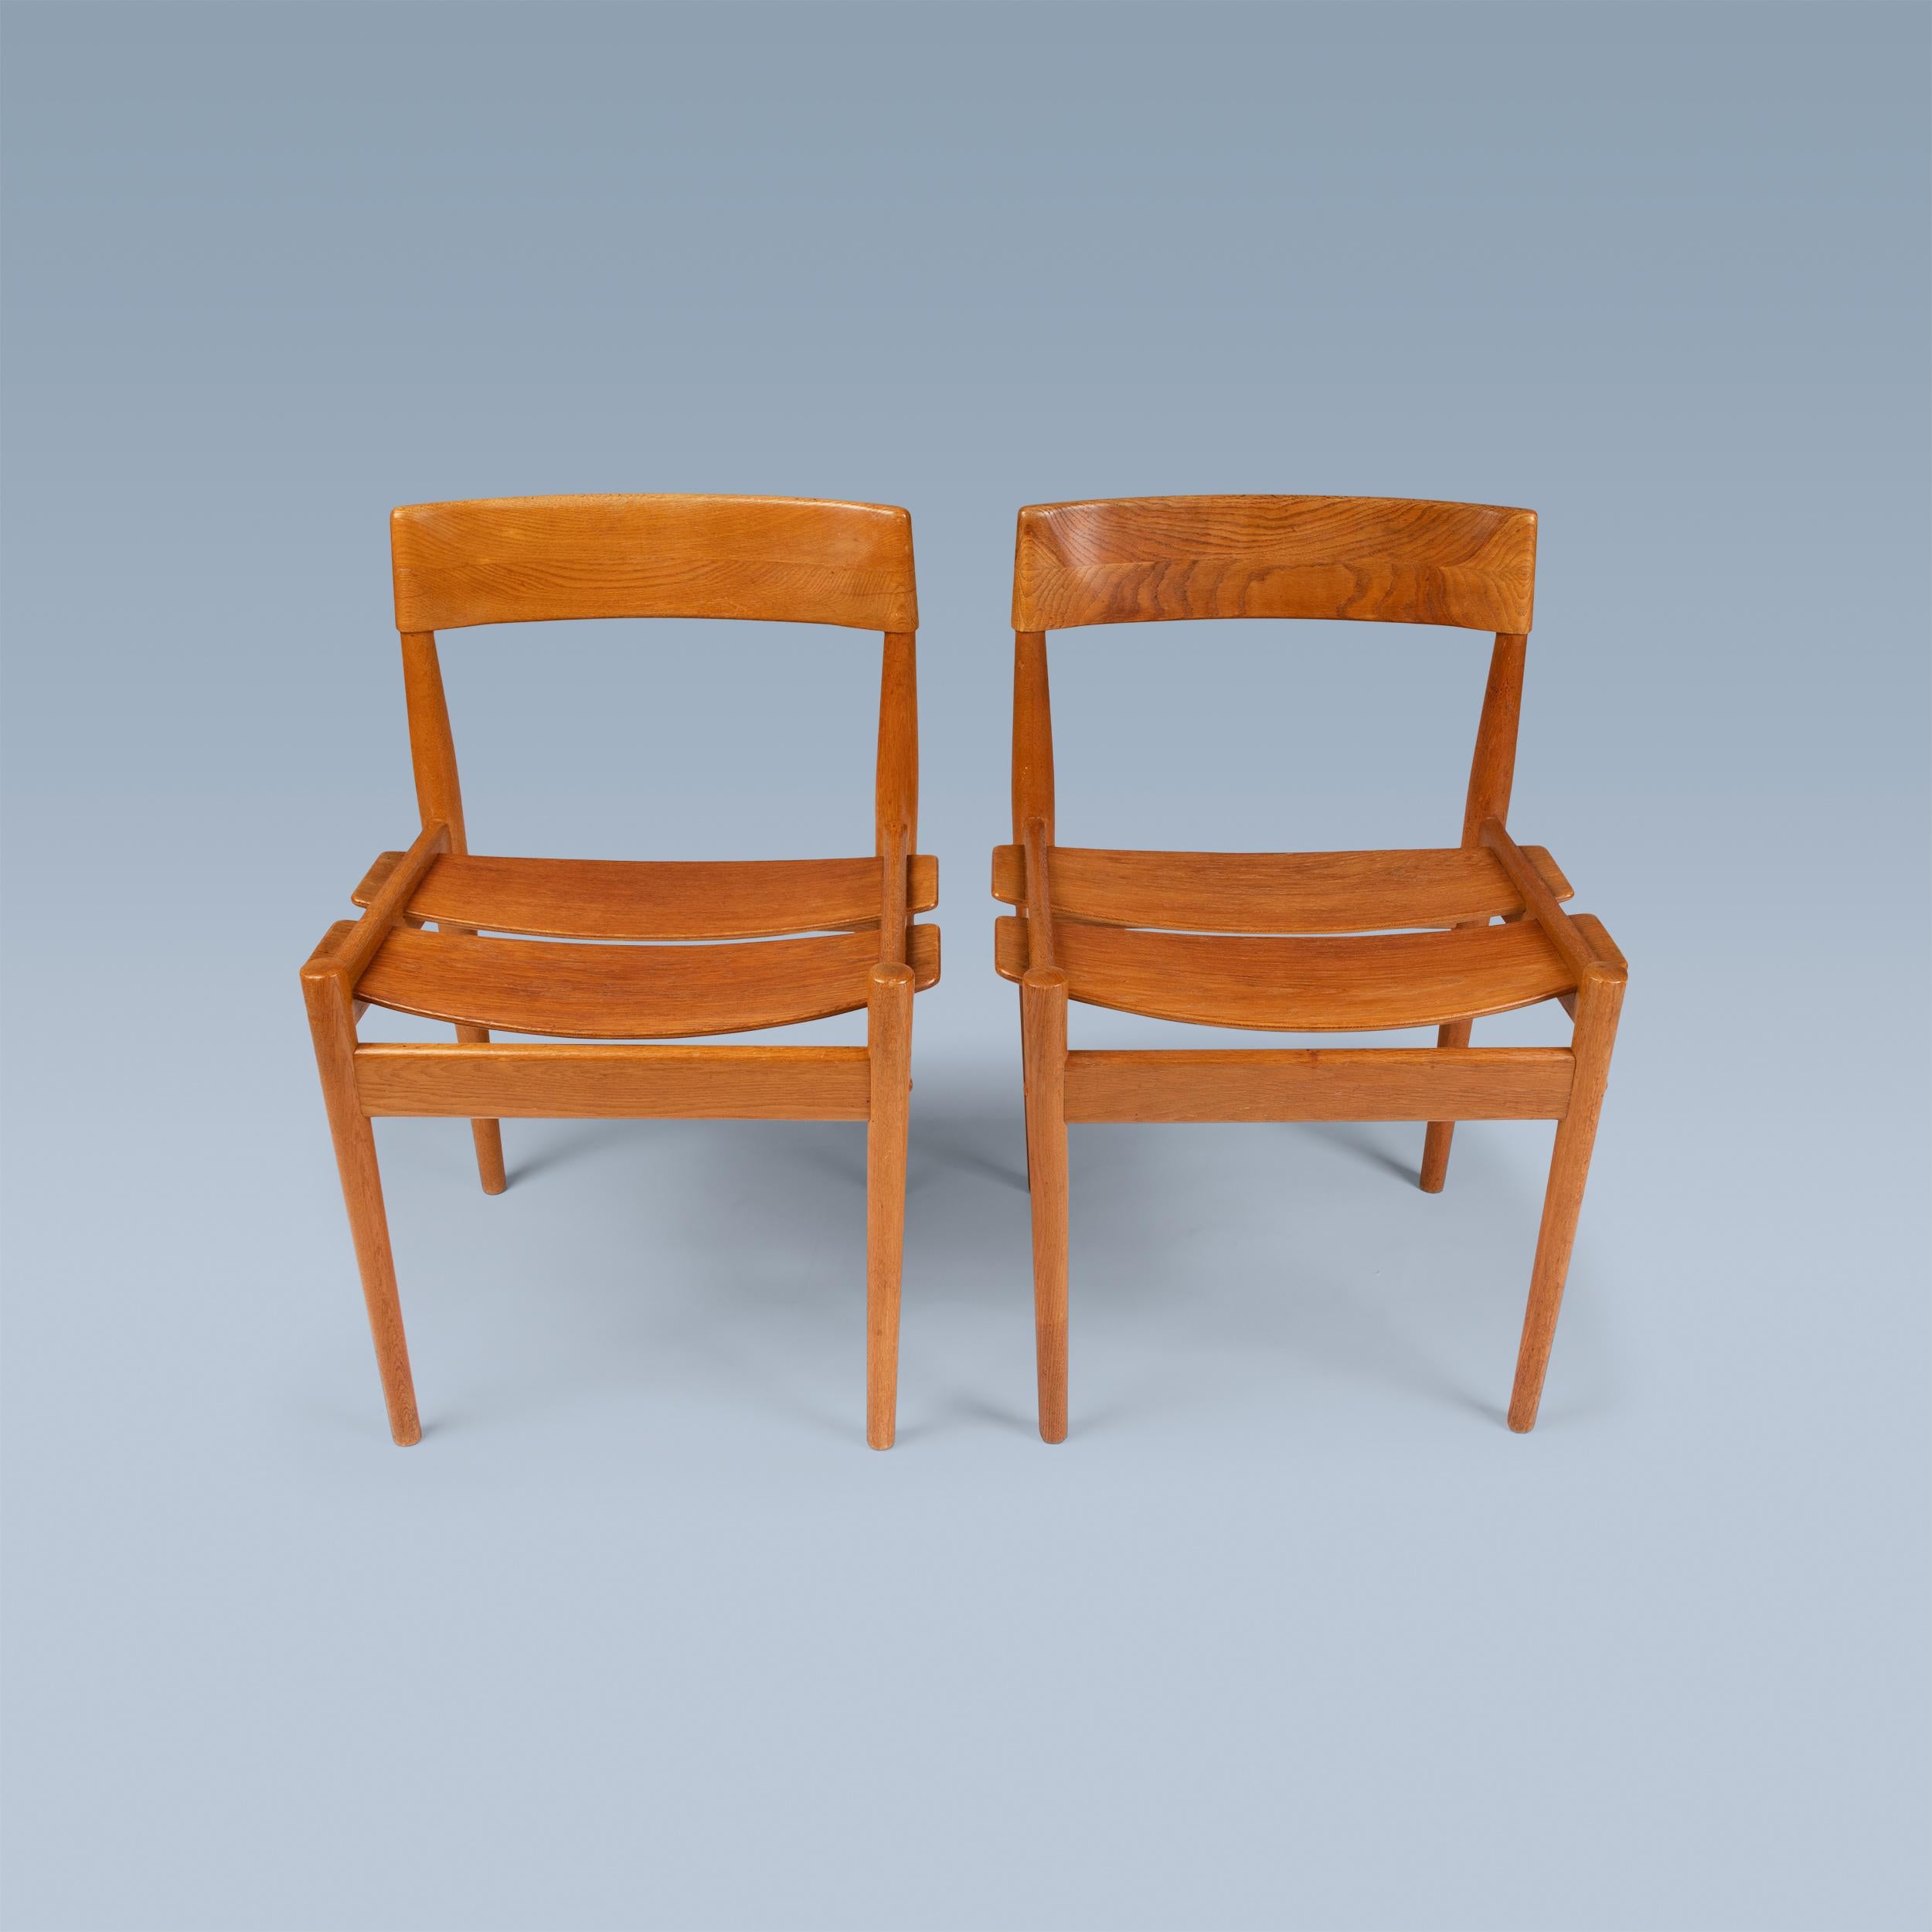 Cette paire de chaises d'appoint (modèle 3-1) en chêne légèrement fumigé a été rarement vue.
conçu vers 1956 par la designer danoise Grete Jalk (1920-2006). Ces exemples ont été réalisés par Poul Jeppesen, au Danemark, à la fin des années 1950.